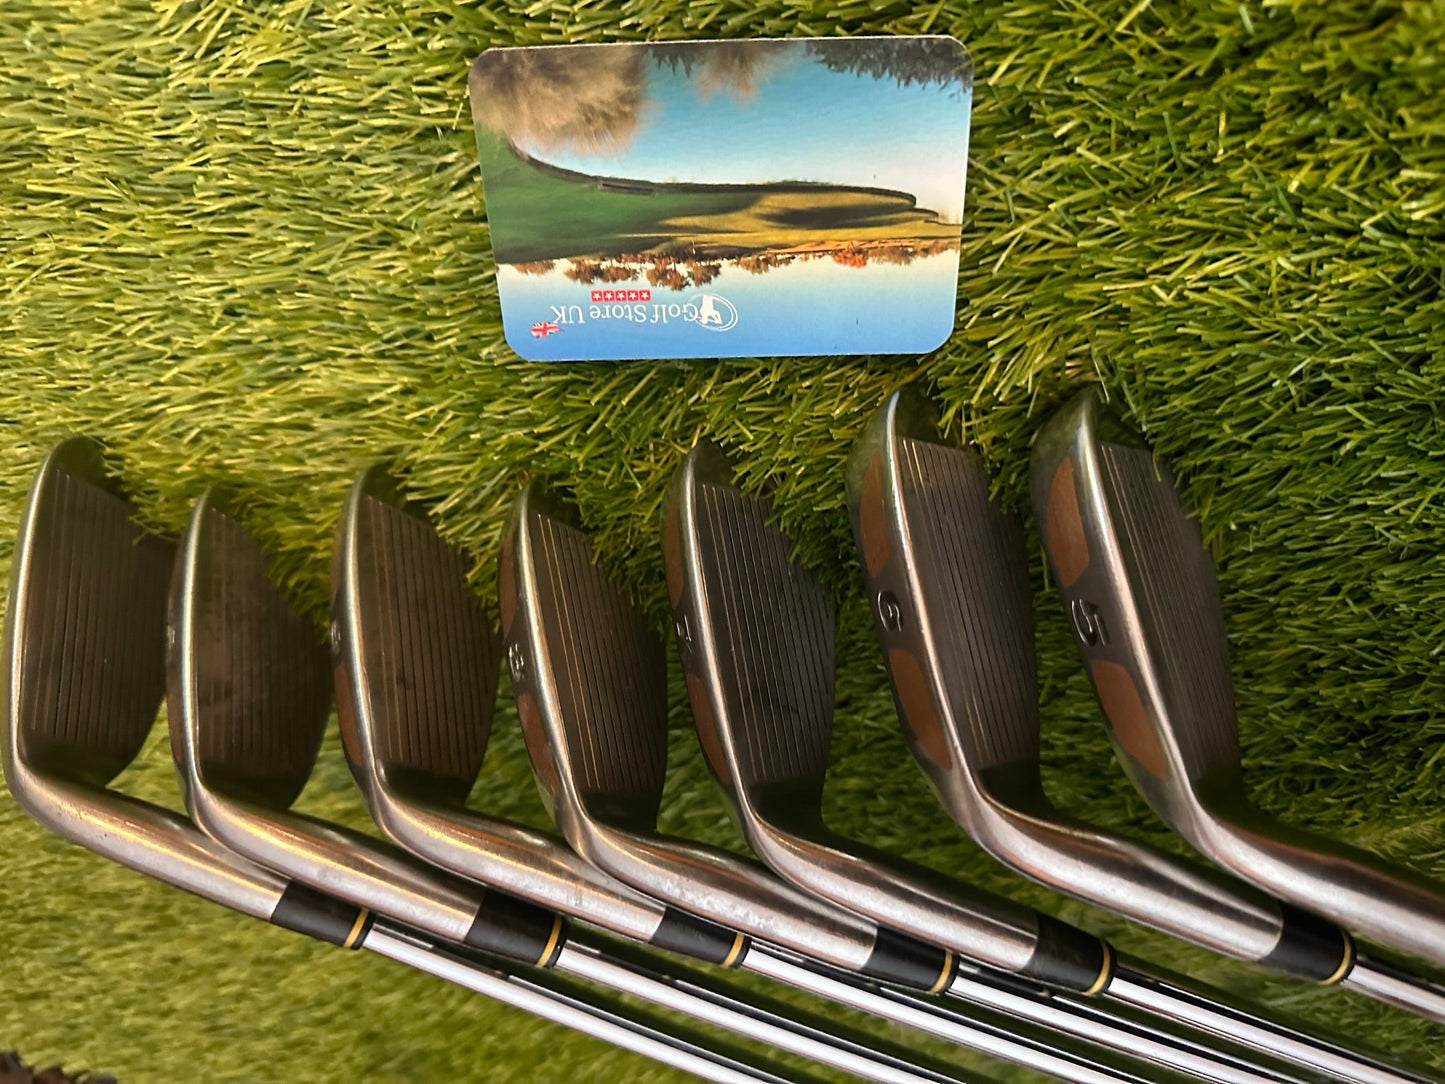 Ben Sayers Contact Iron Set 5-SW, Stunning Set - Golf Store UK